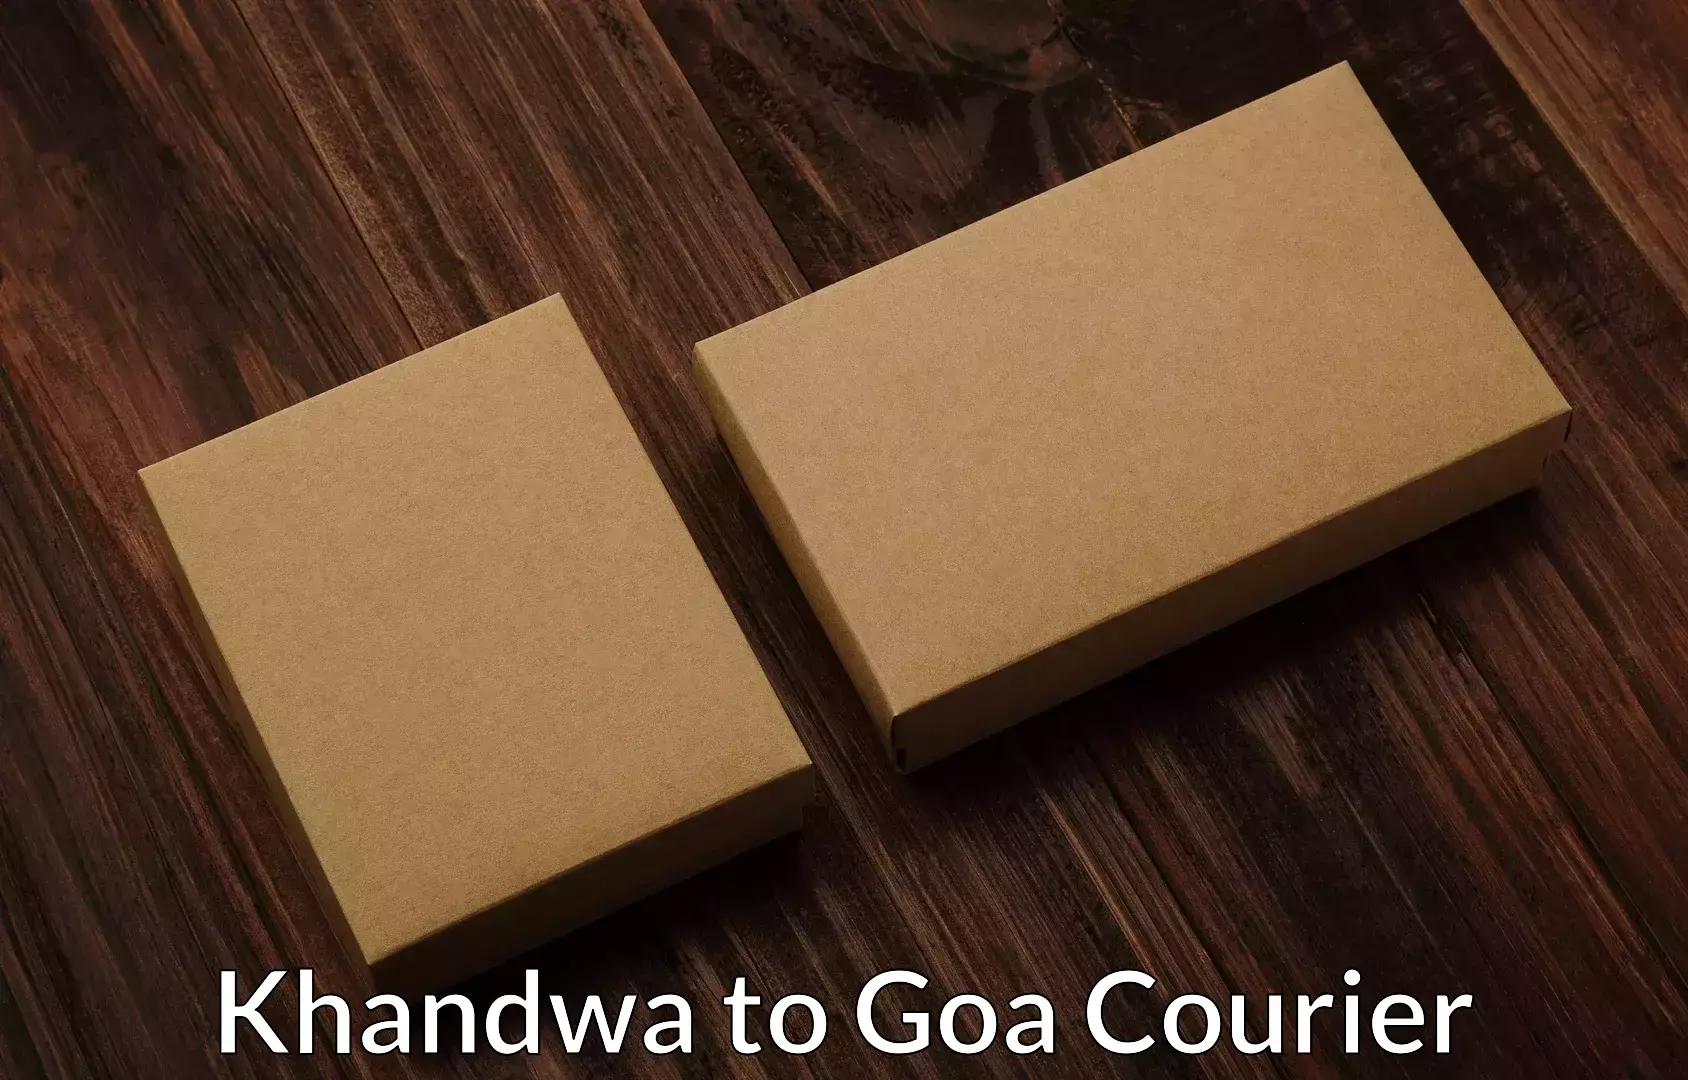 Residential furniture transport Khandwa to Panjim